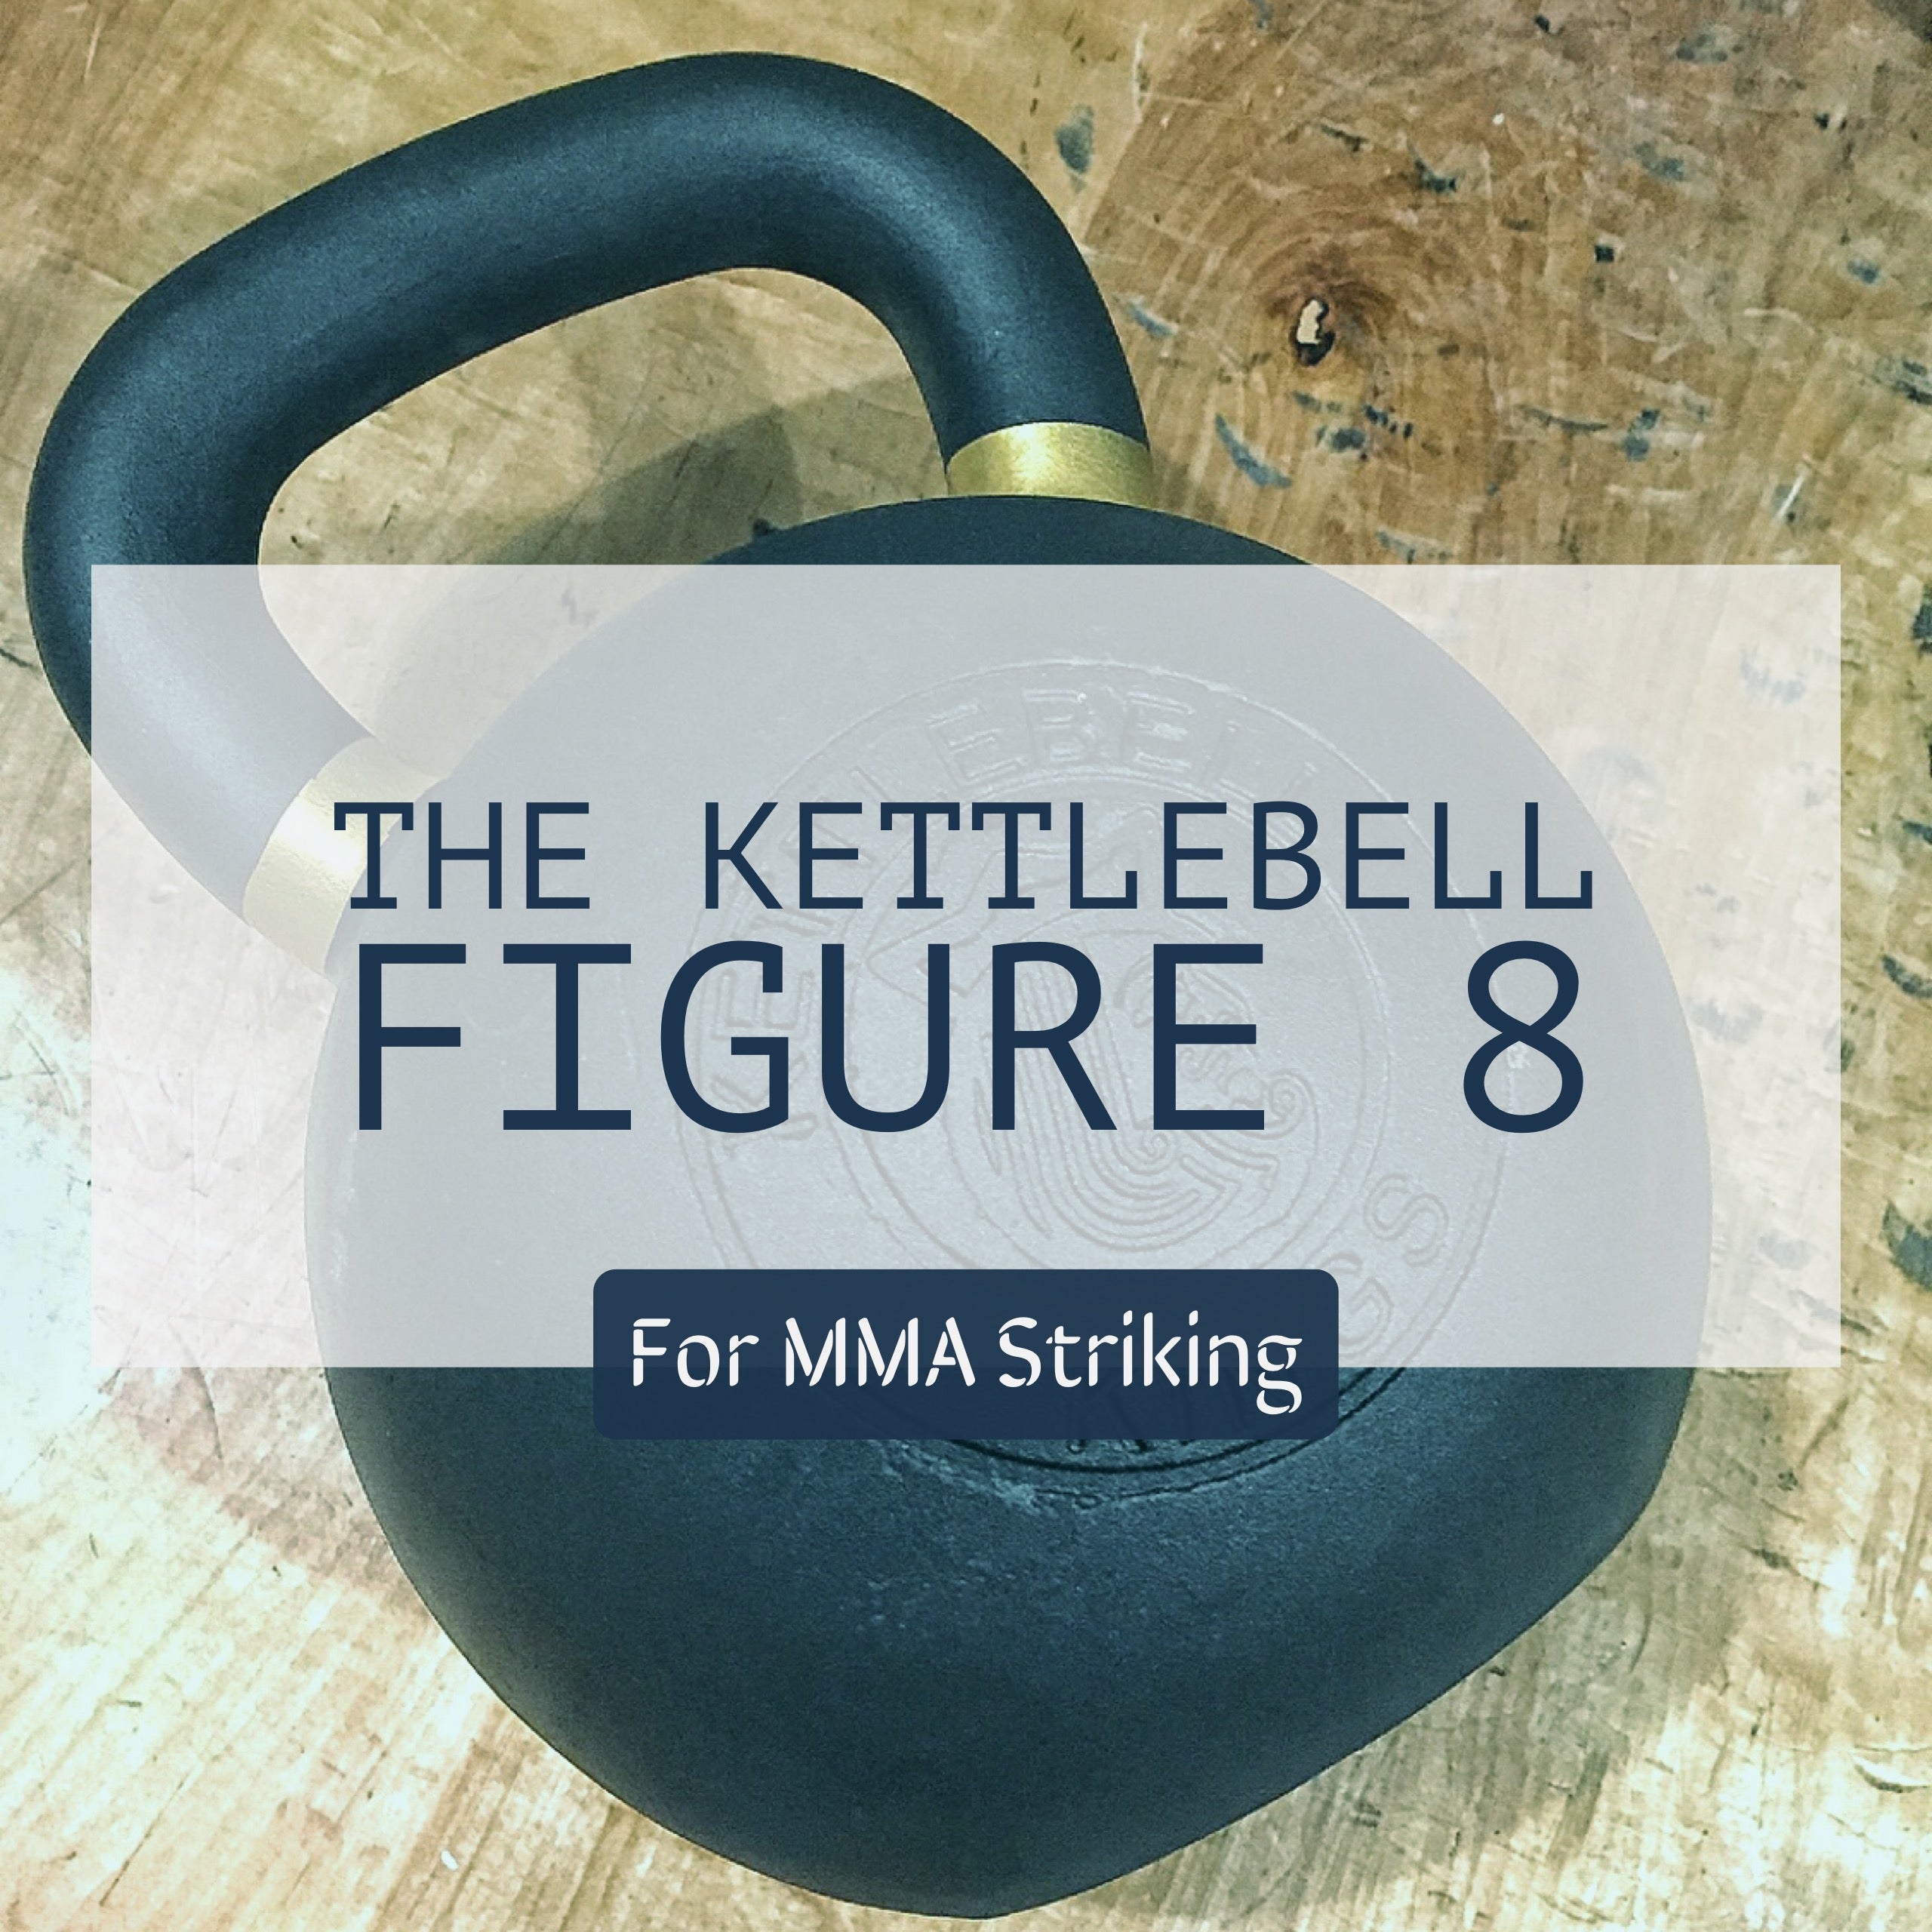 The Kettlebell Figure 8 For MMA Striking